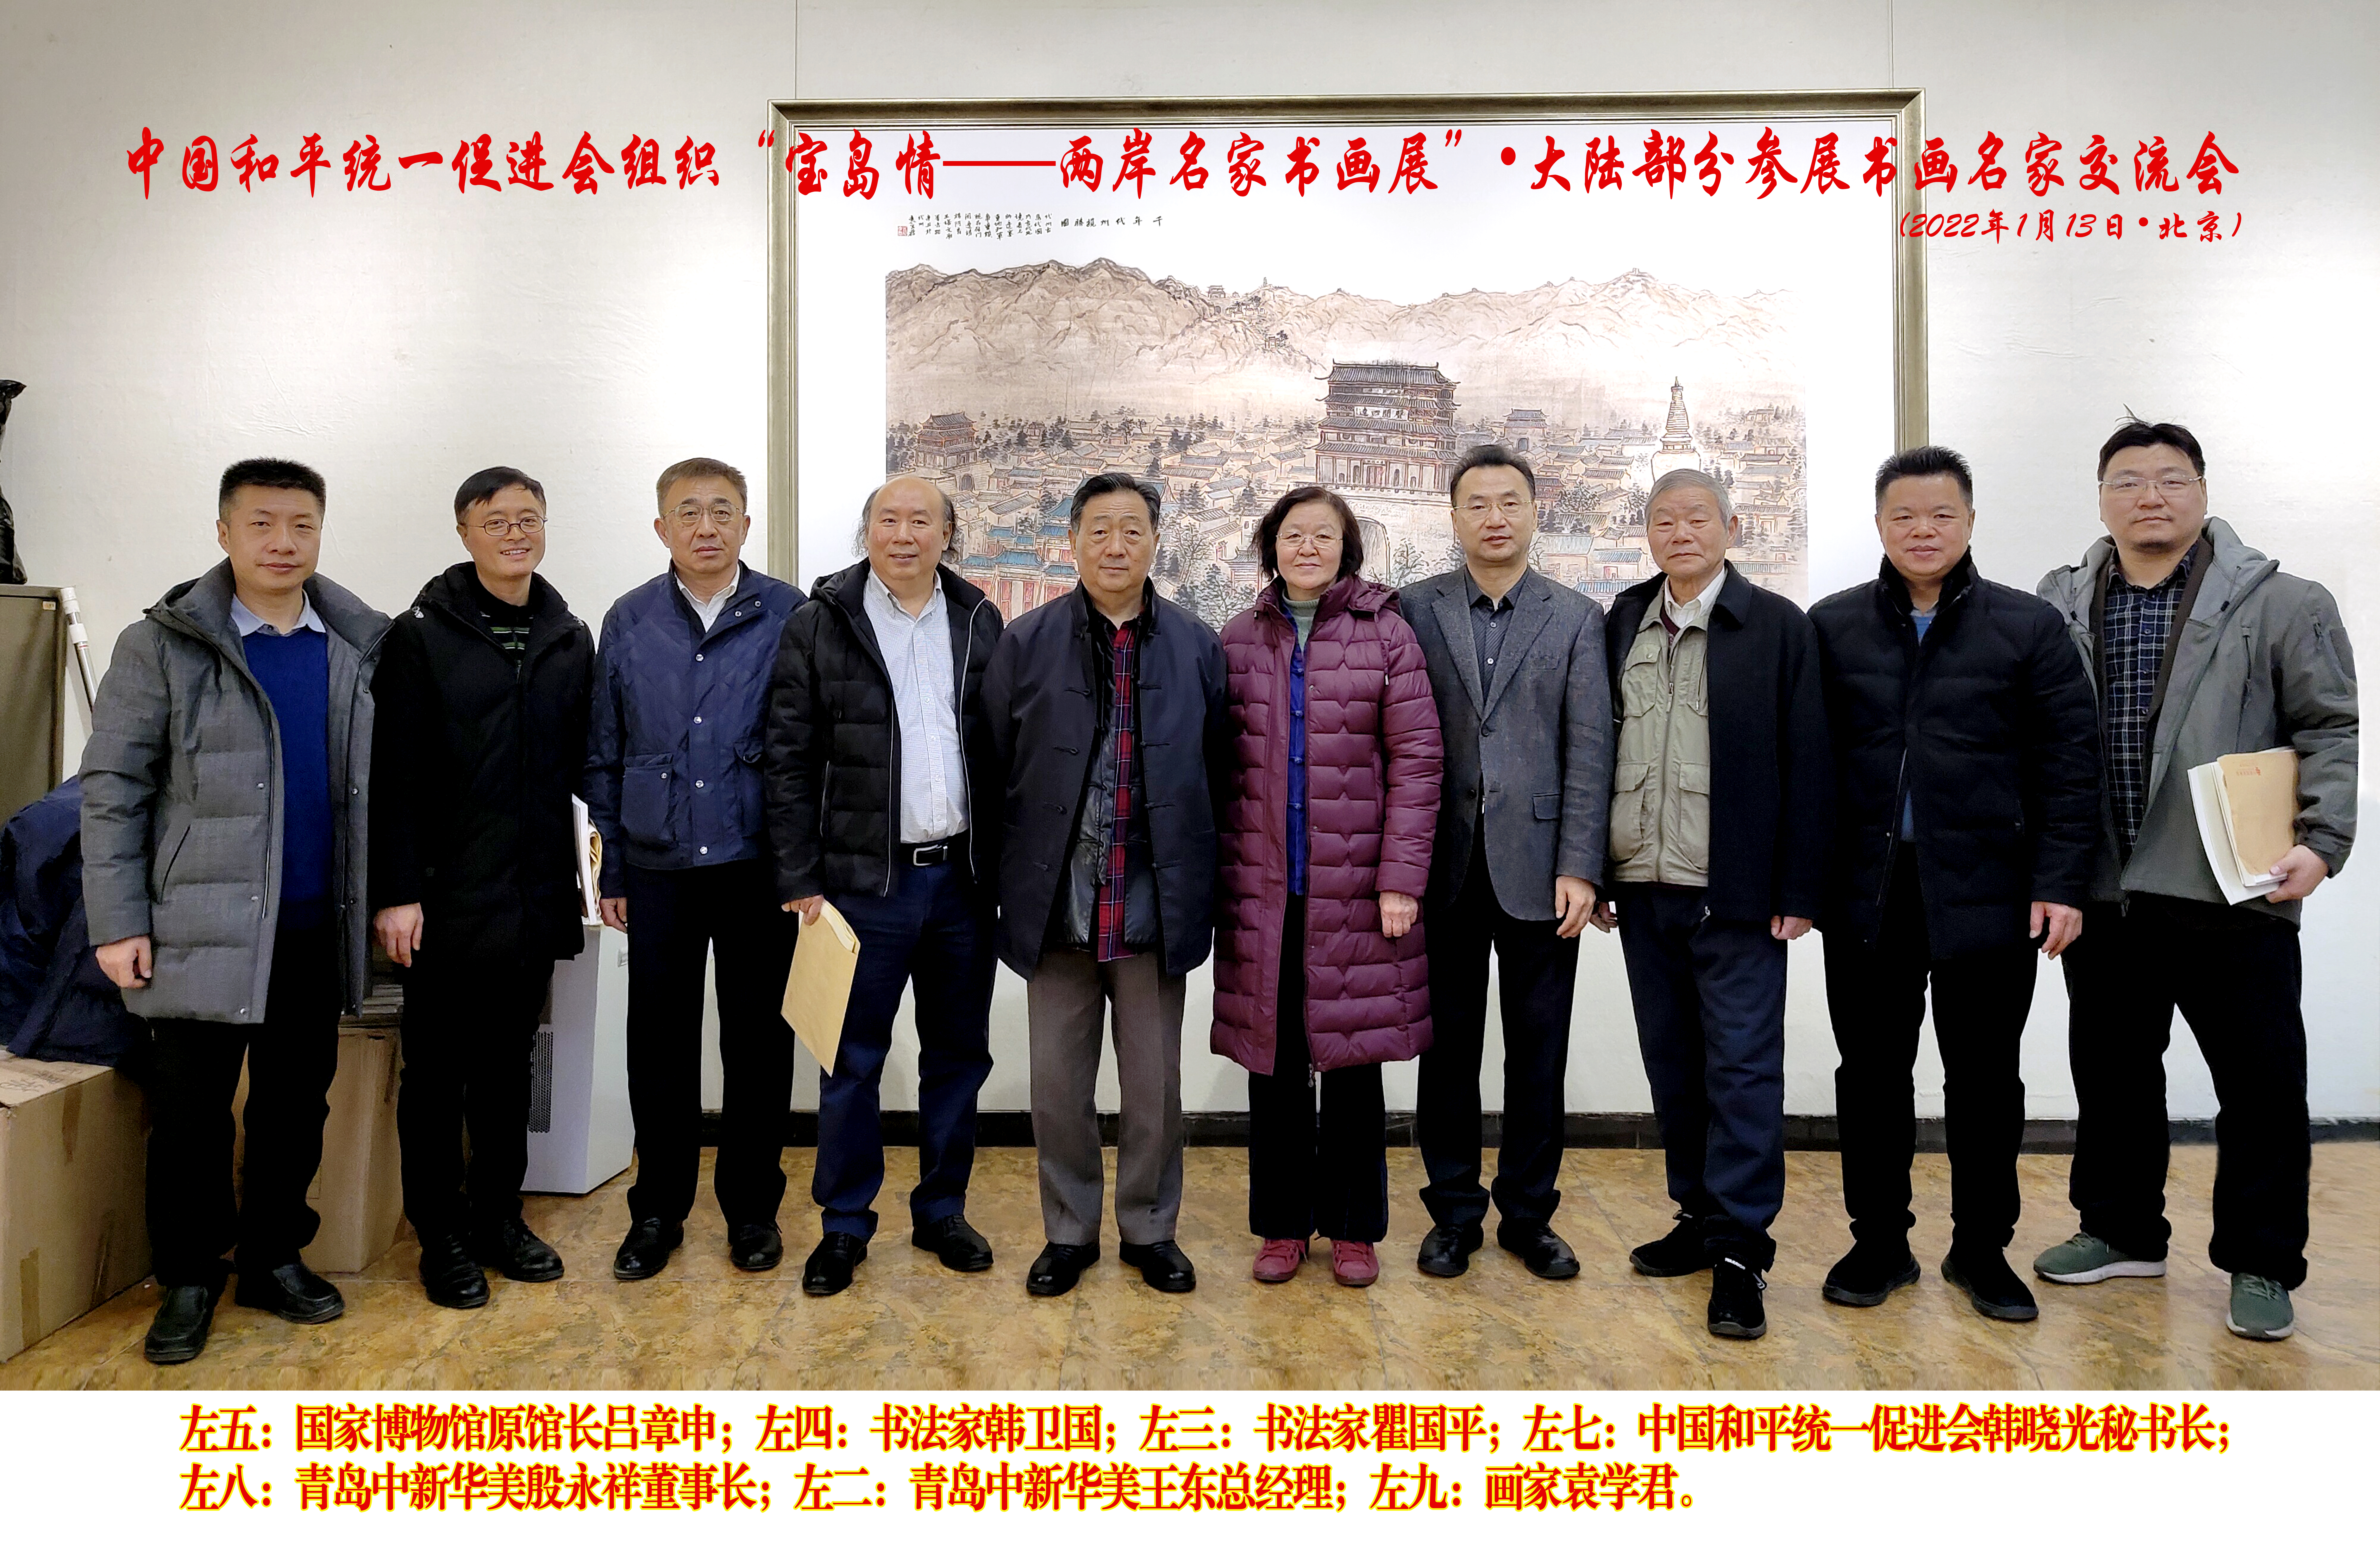 中国和平统一促进会组织“宝岛情--两岸名家书画展”.大陆部分参展书画名家交流会